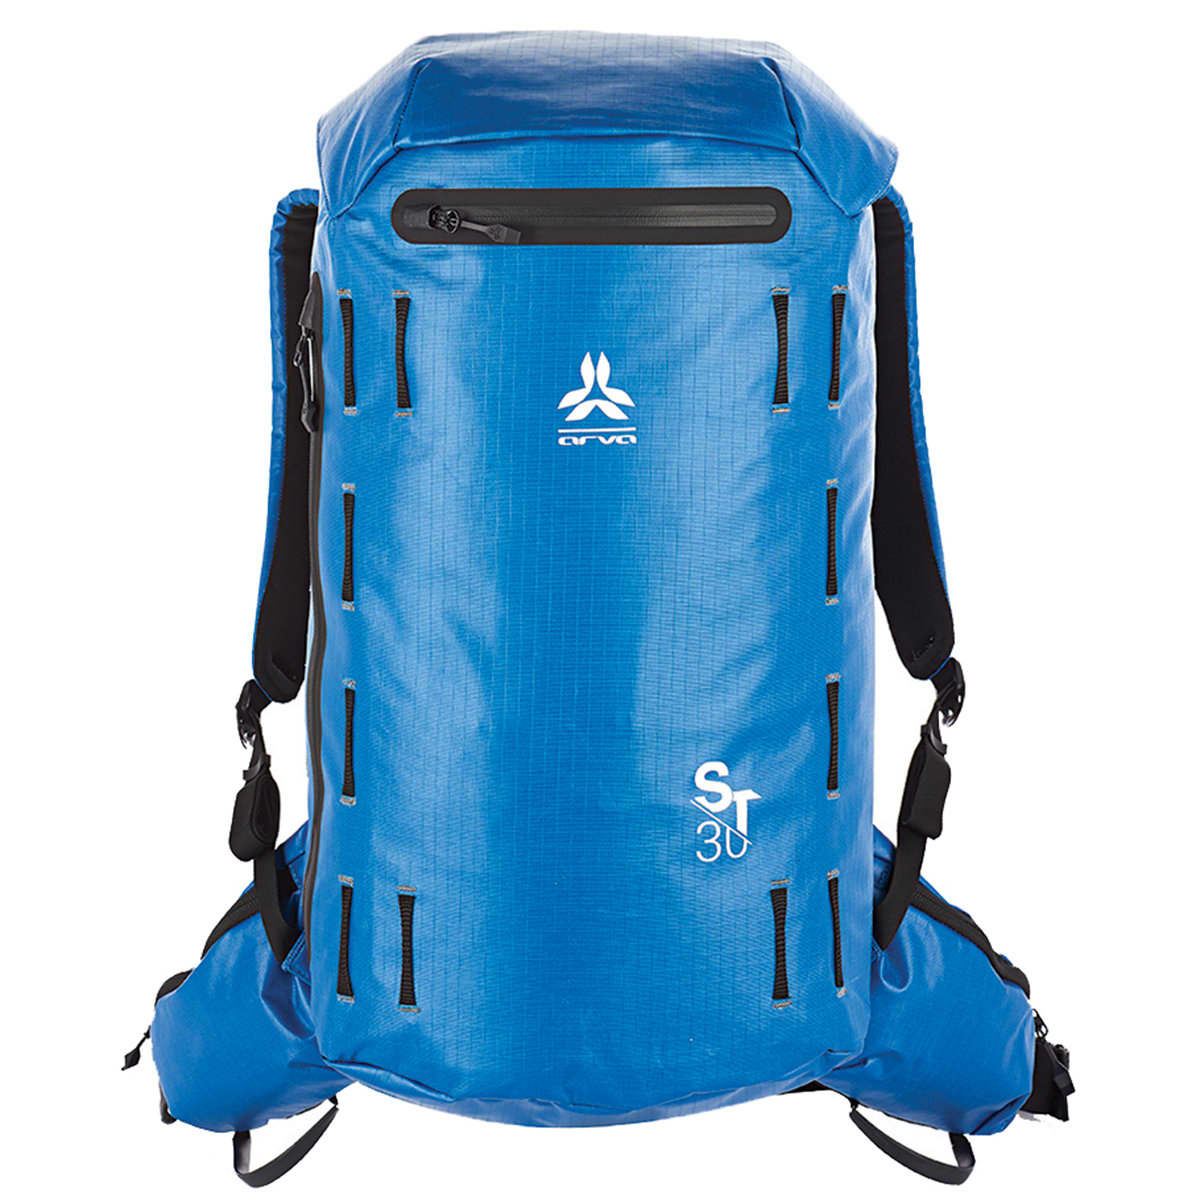 Arva ST 30 - Ski backpack